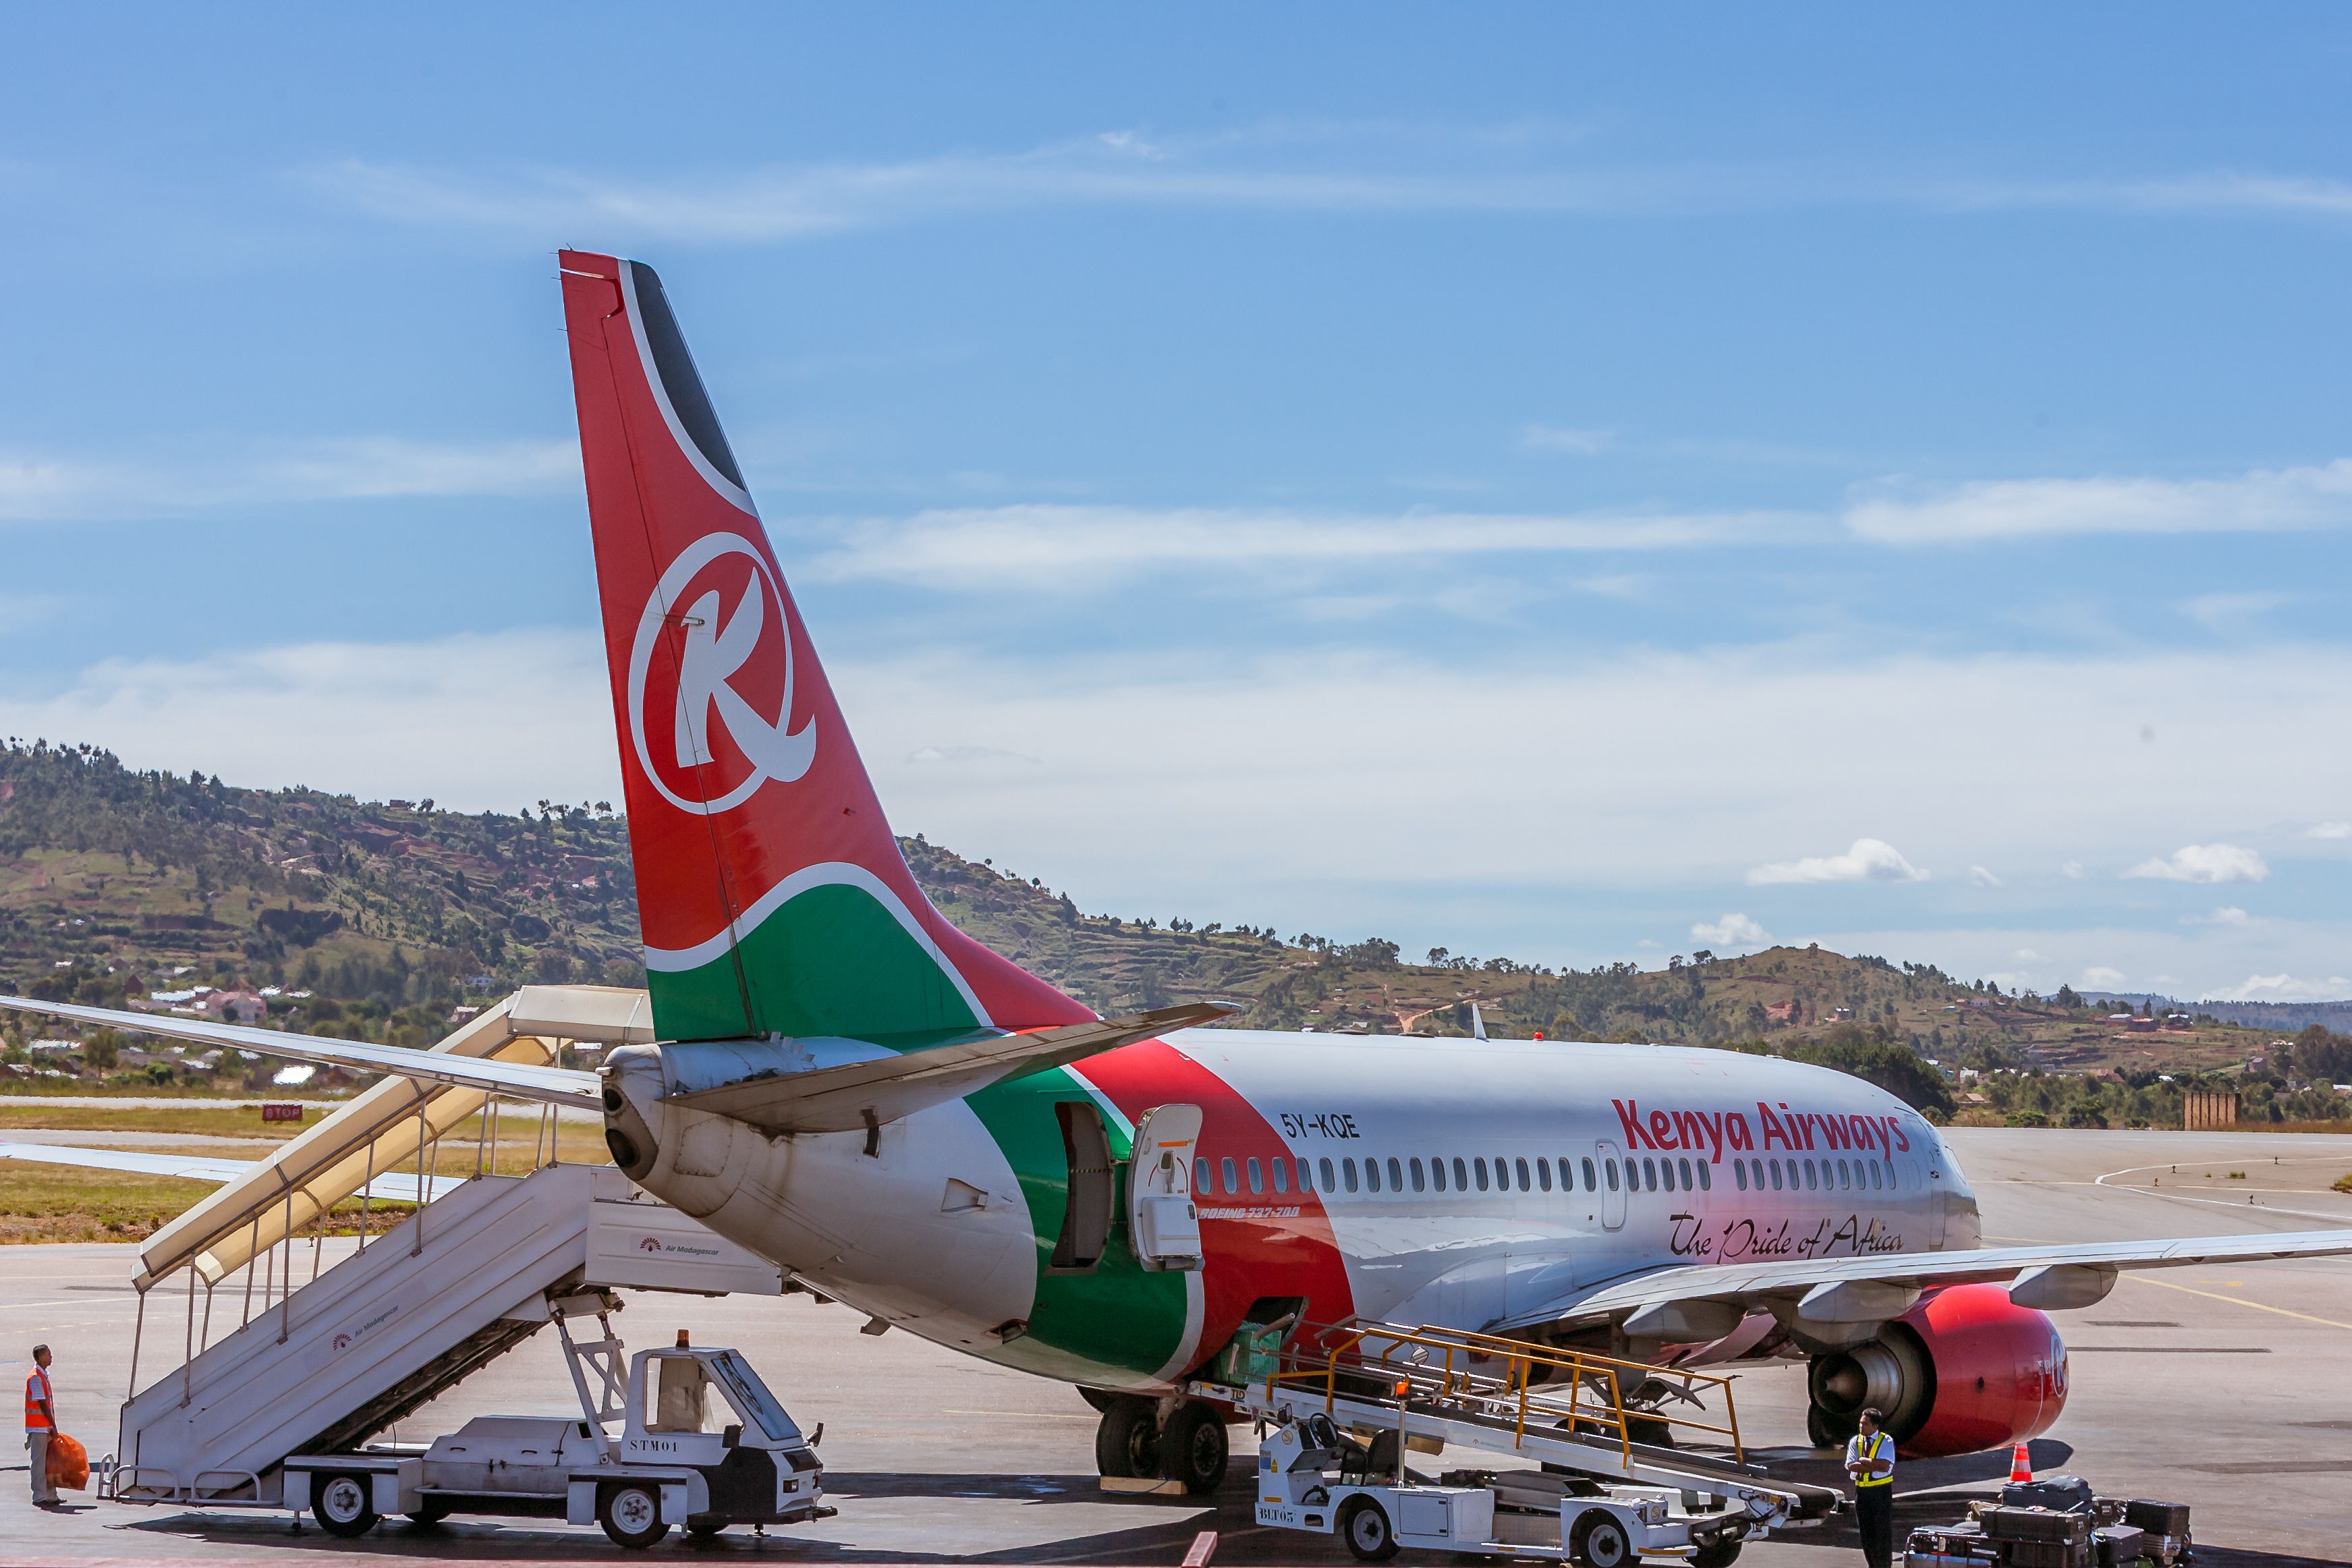 Kenya Airways Boeing 737 parked on stand